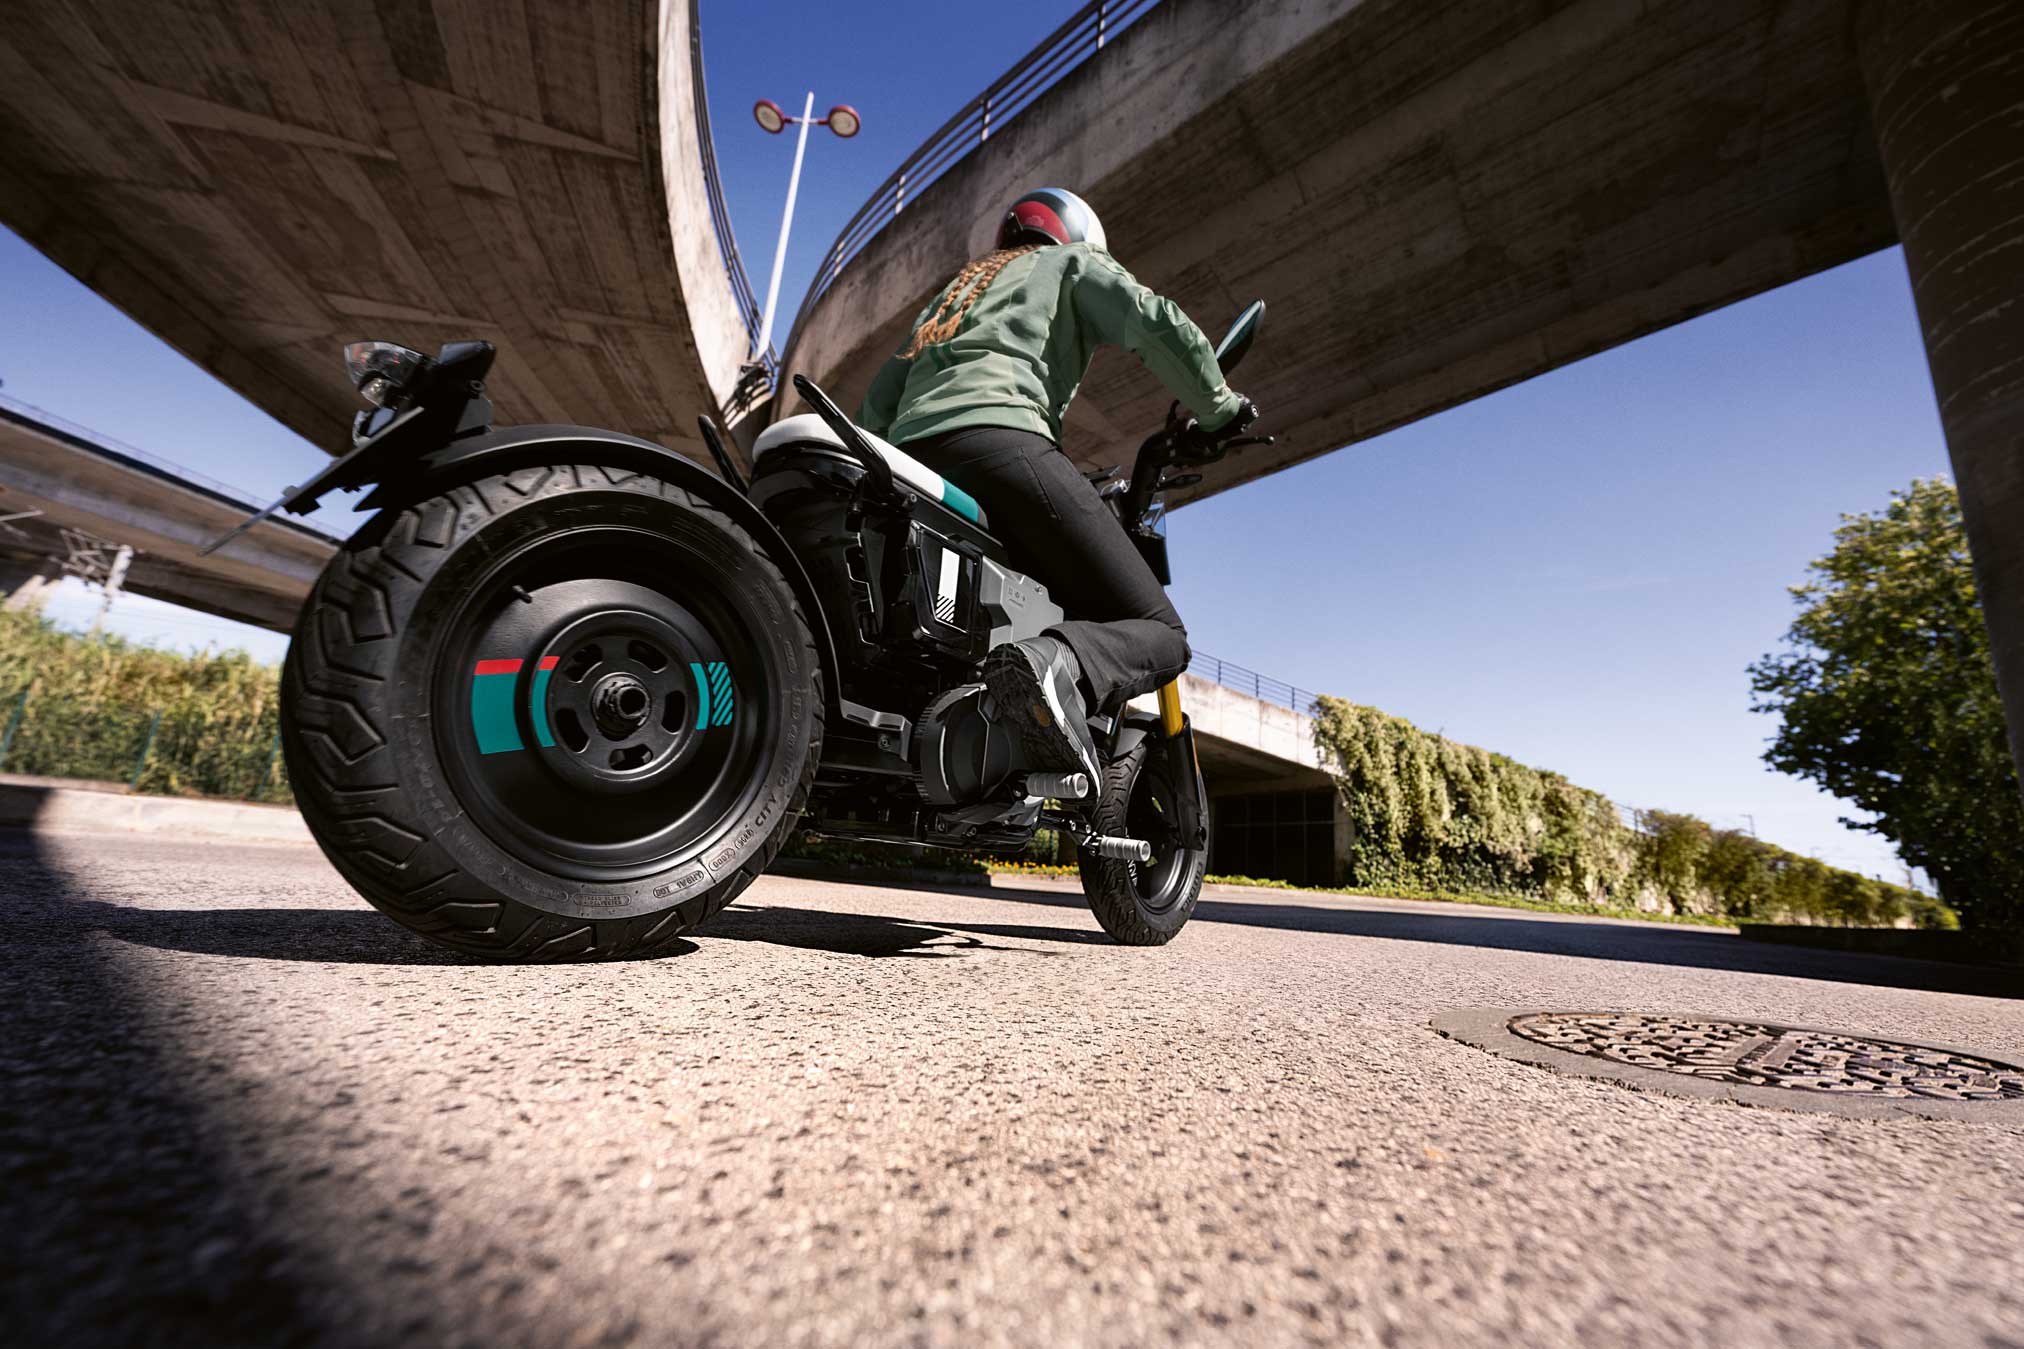 Testamos a XM 250 R, modelo off road da X-Motos - moto.com.br